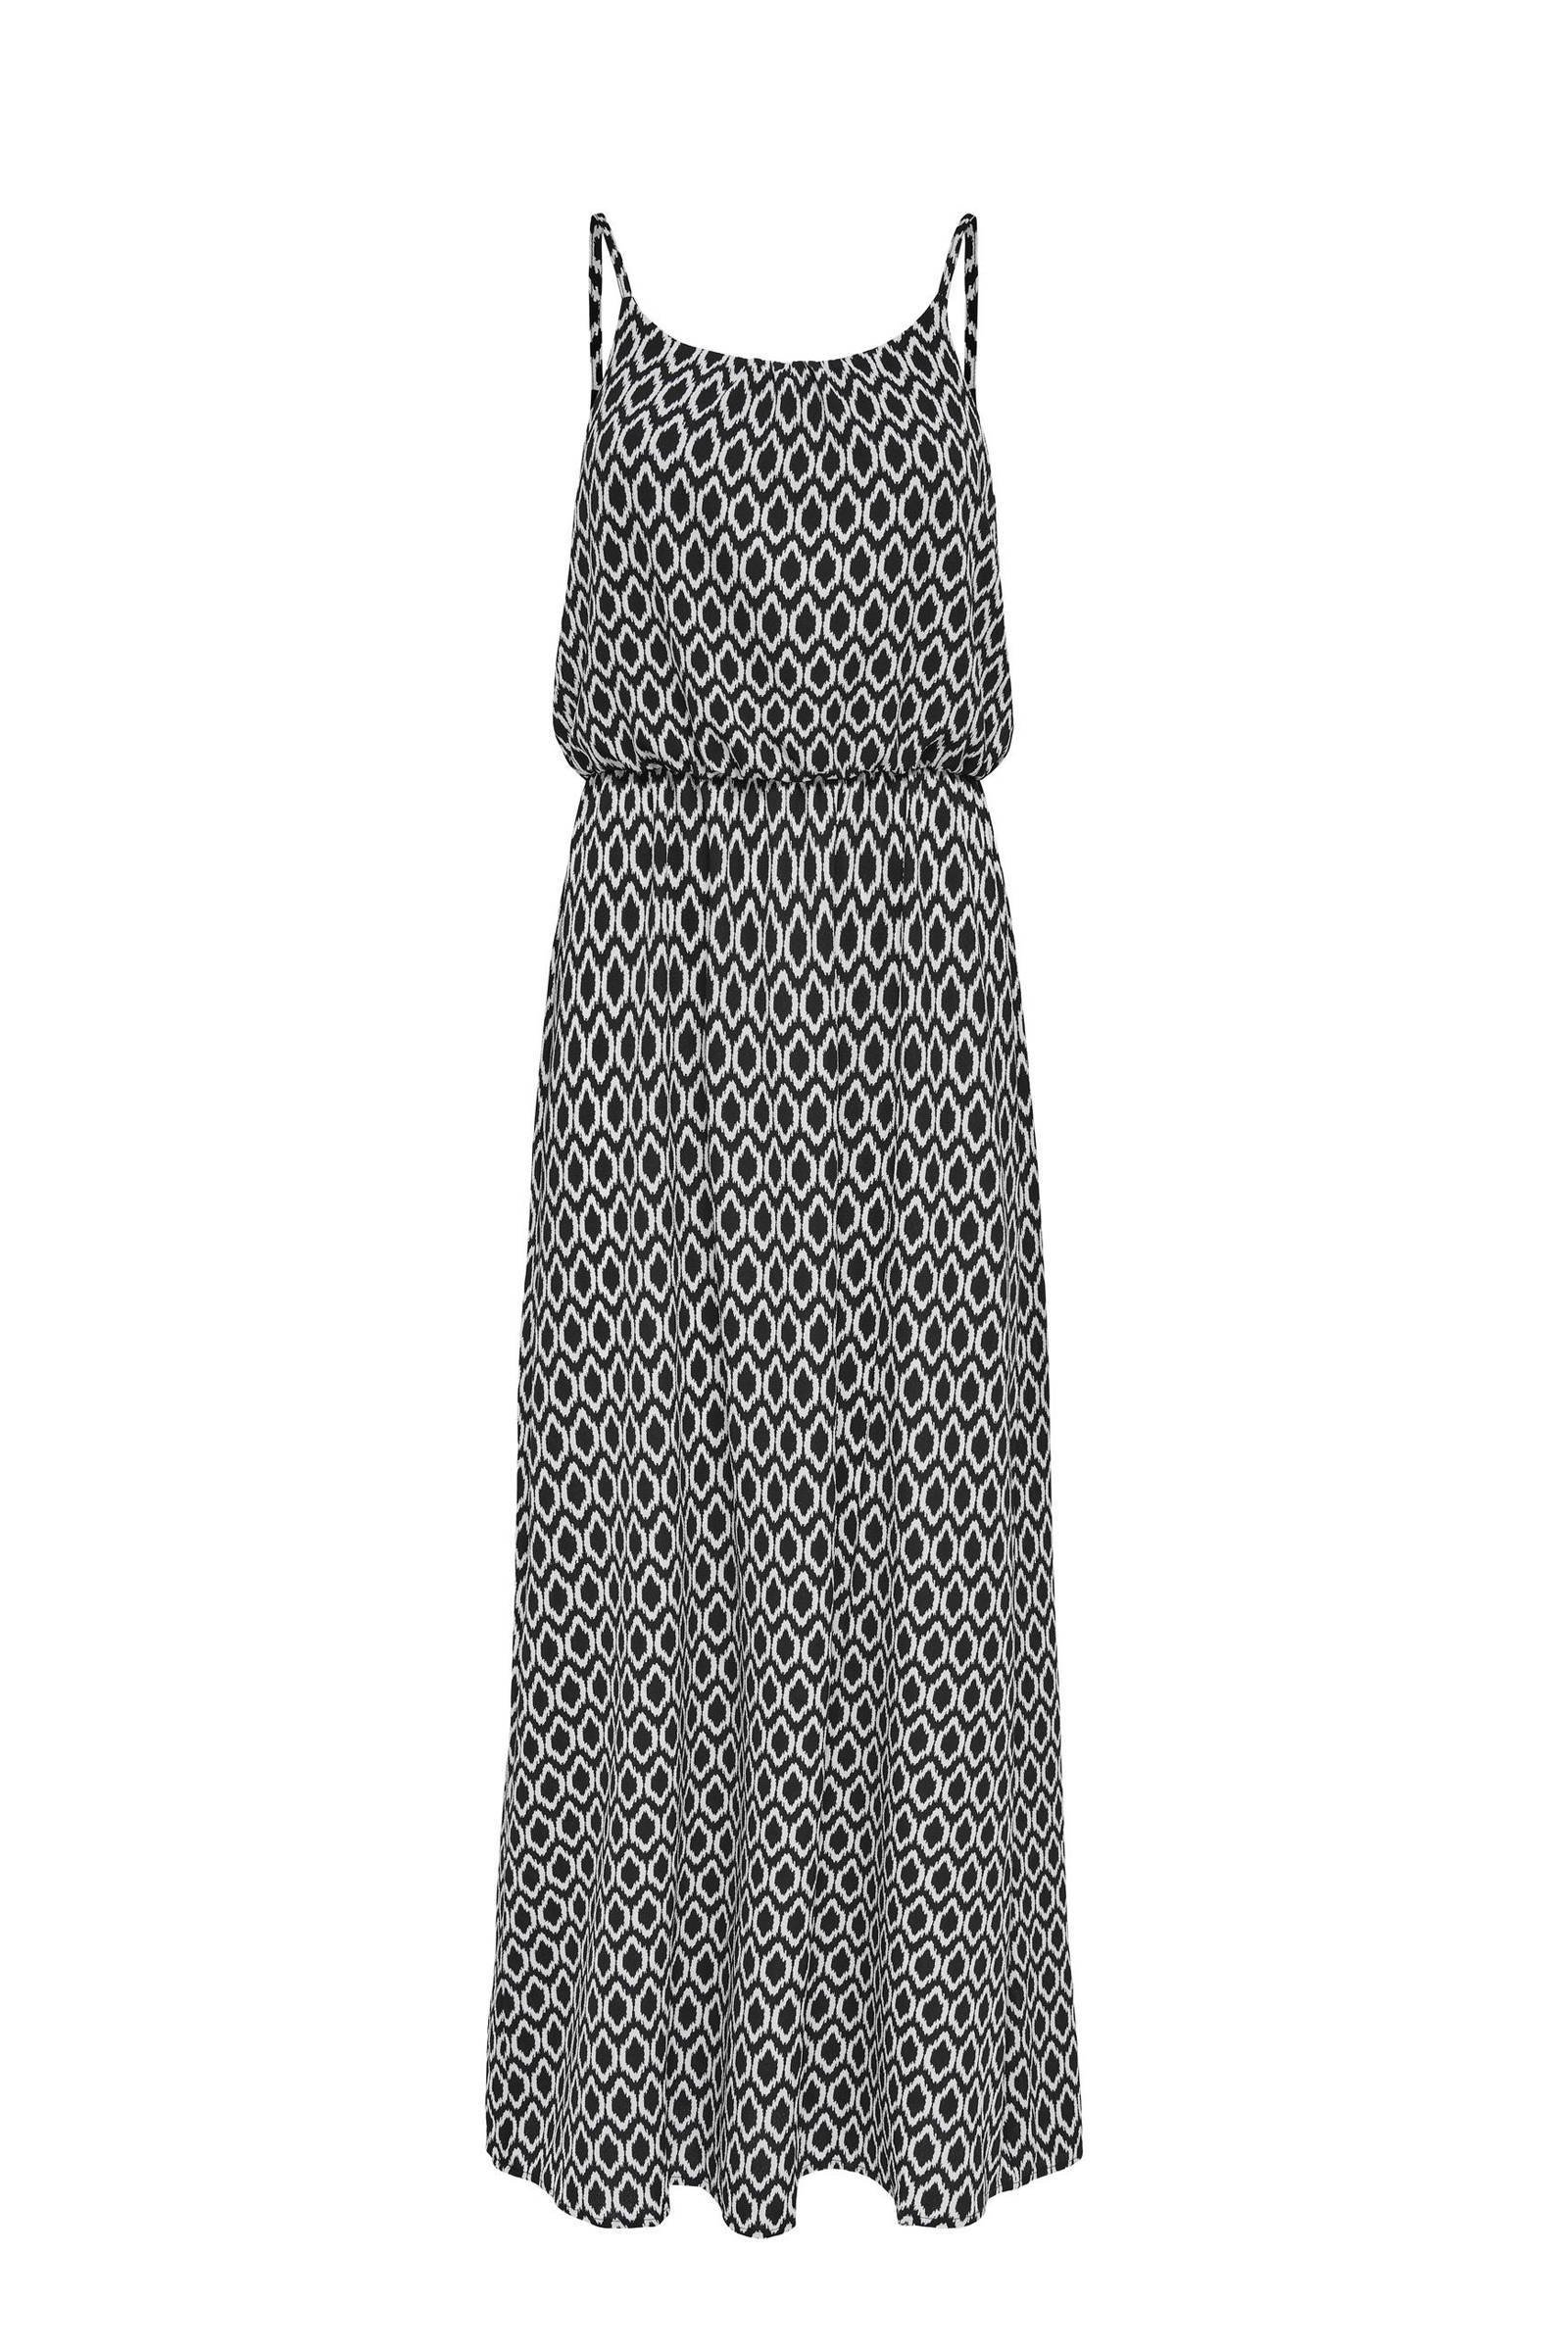 ONLY maxi jurk ONLWINNER met all over print en plooien zwart/wit online kopen